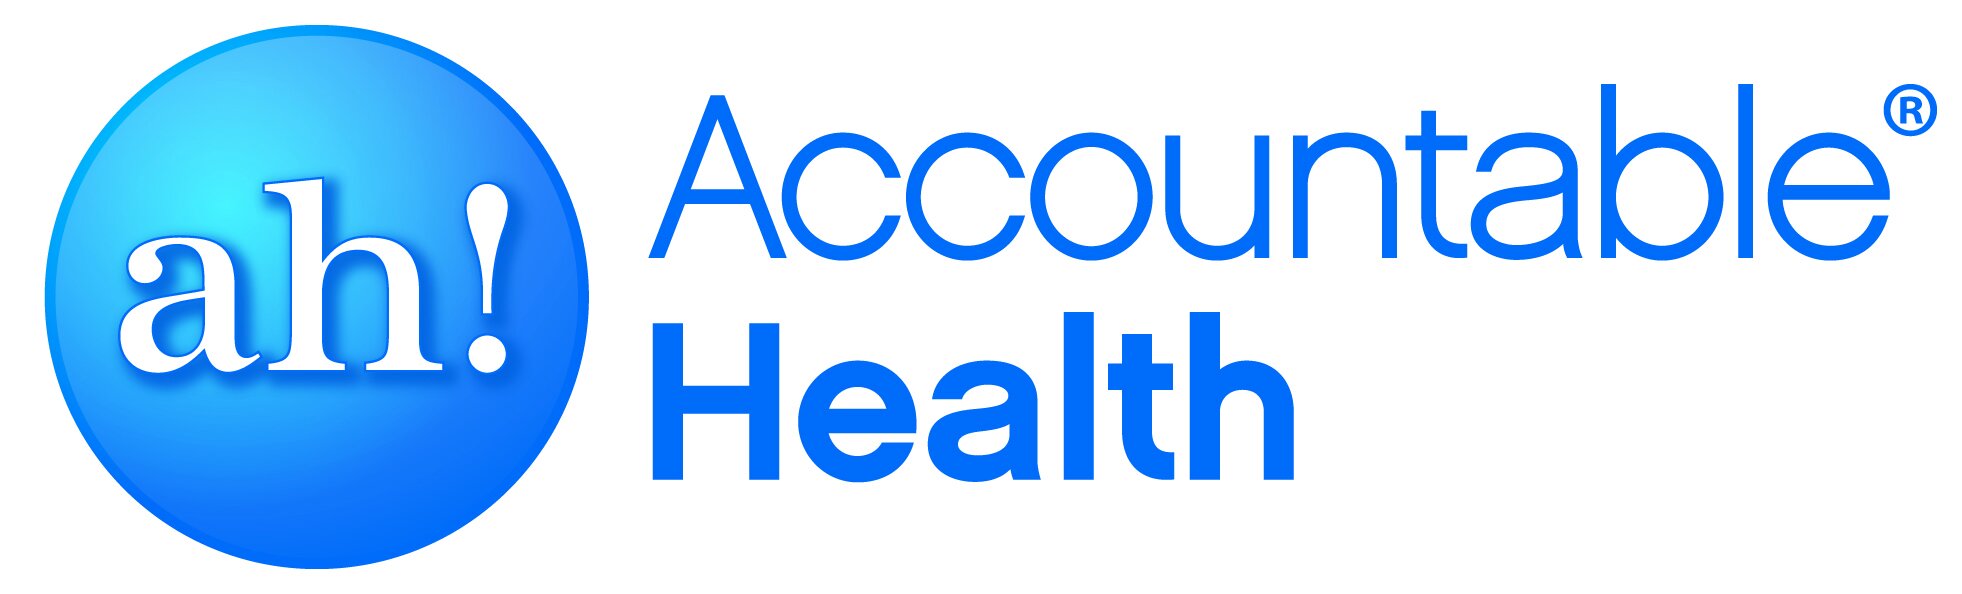 AccountableHealth_Logo_CMYK-registered-new - Fred Goldstein.jpg